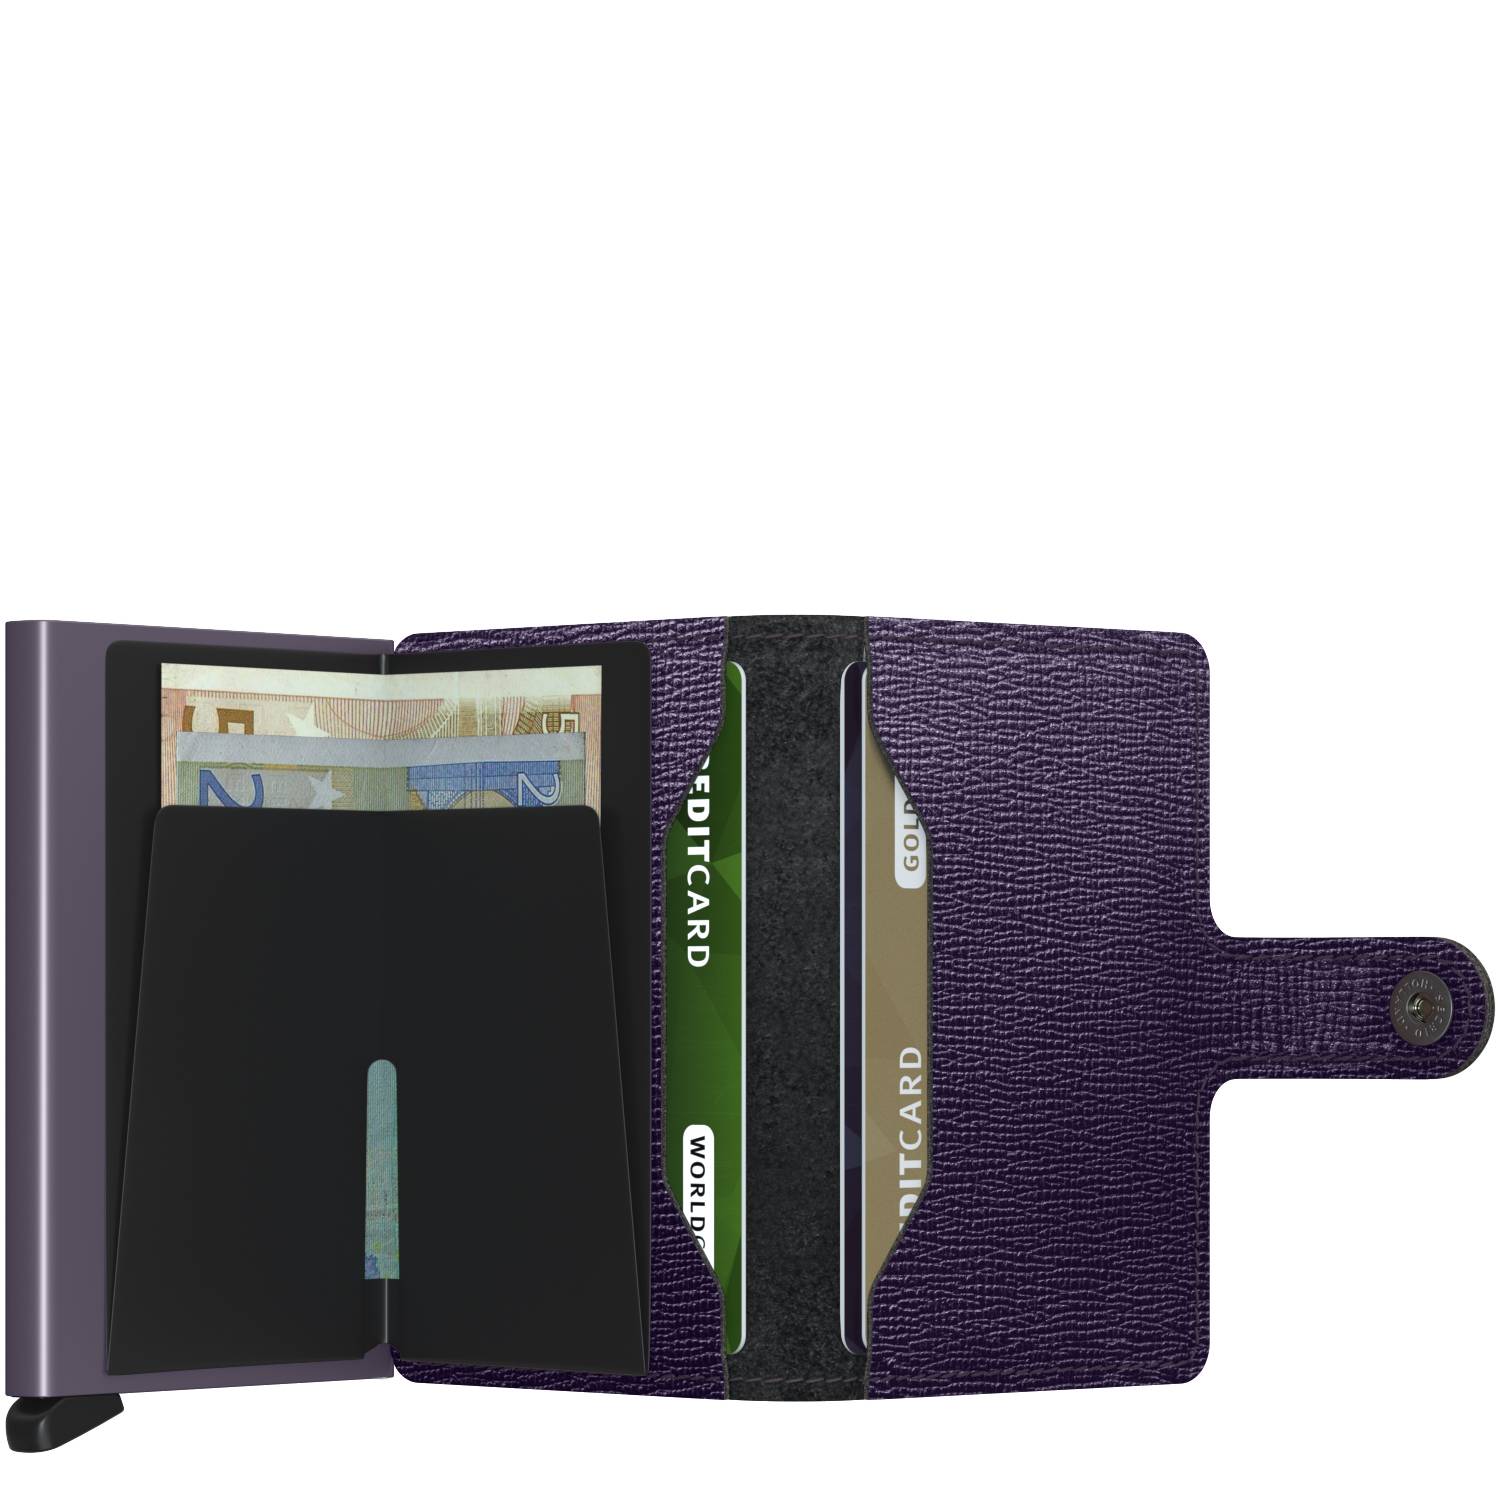 Porte-cartes cuir texturé Secrid Miniwallet Crisple MC Purple (Violet) rangements internes cartes